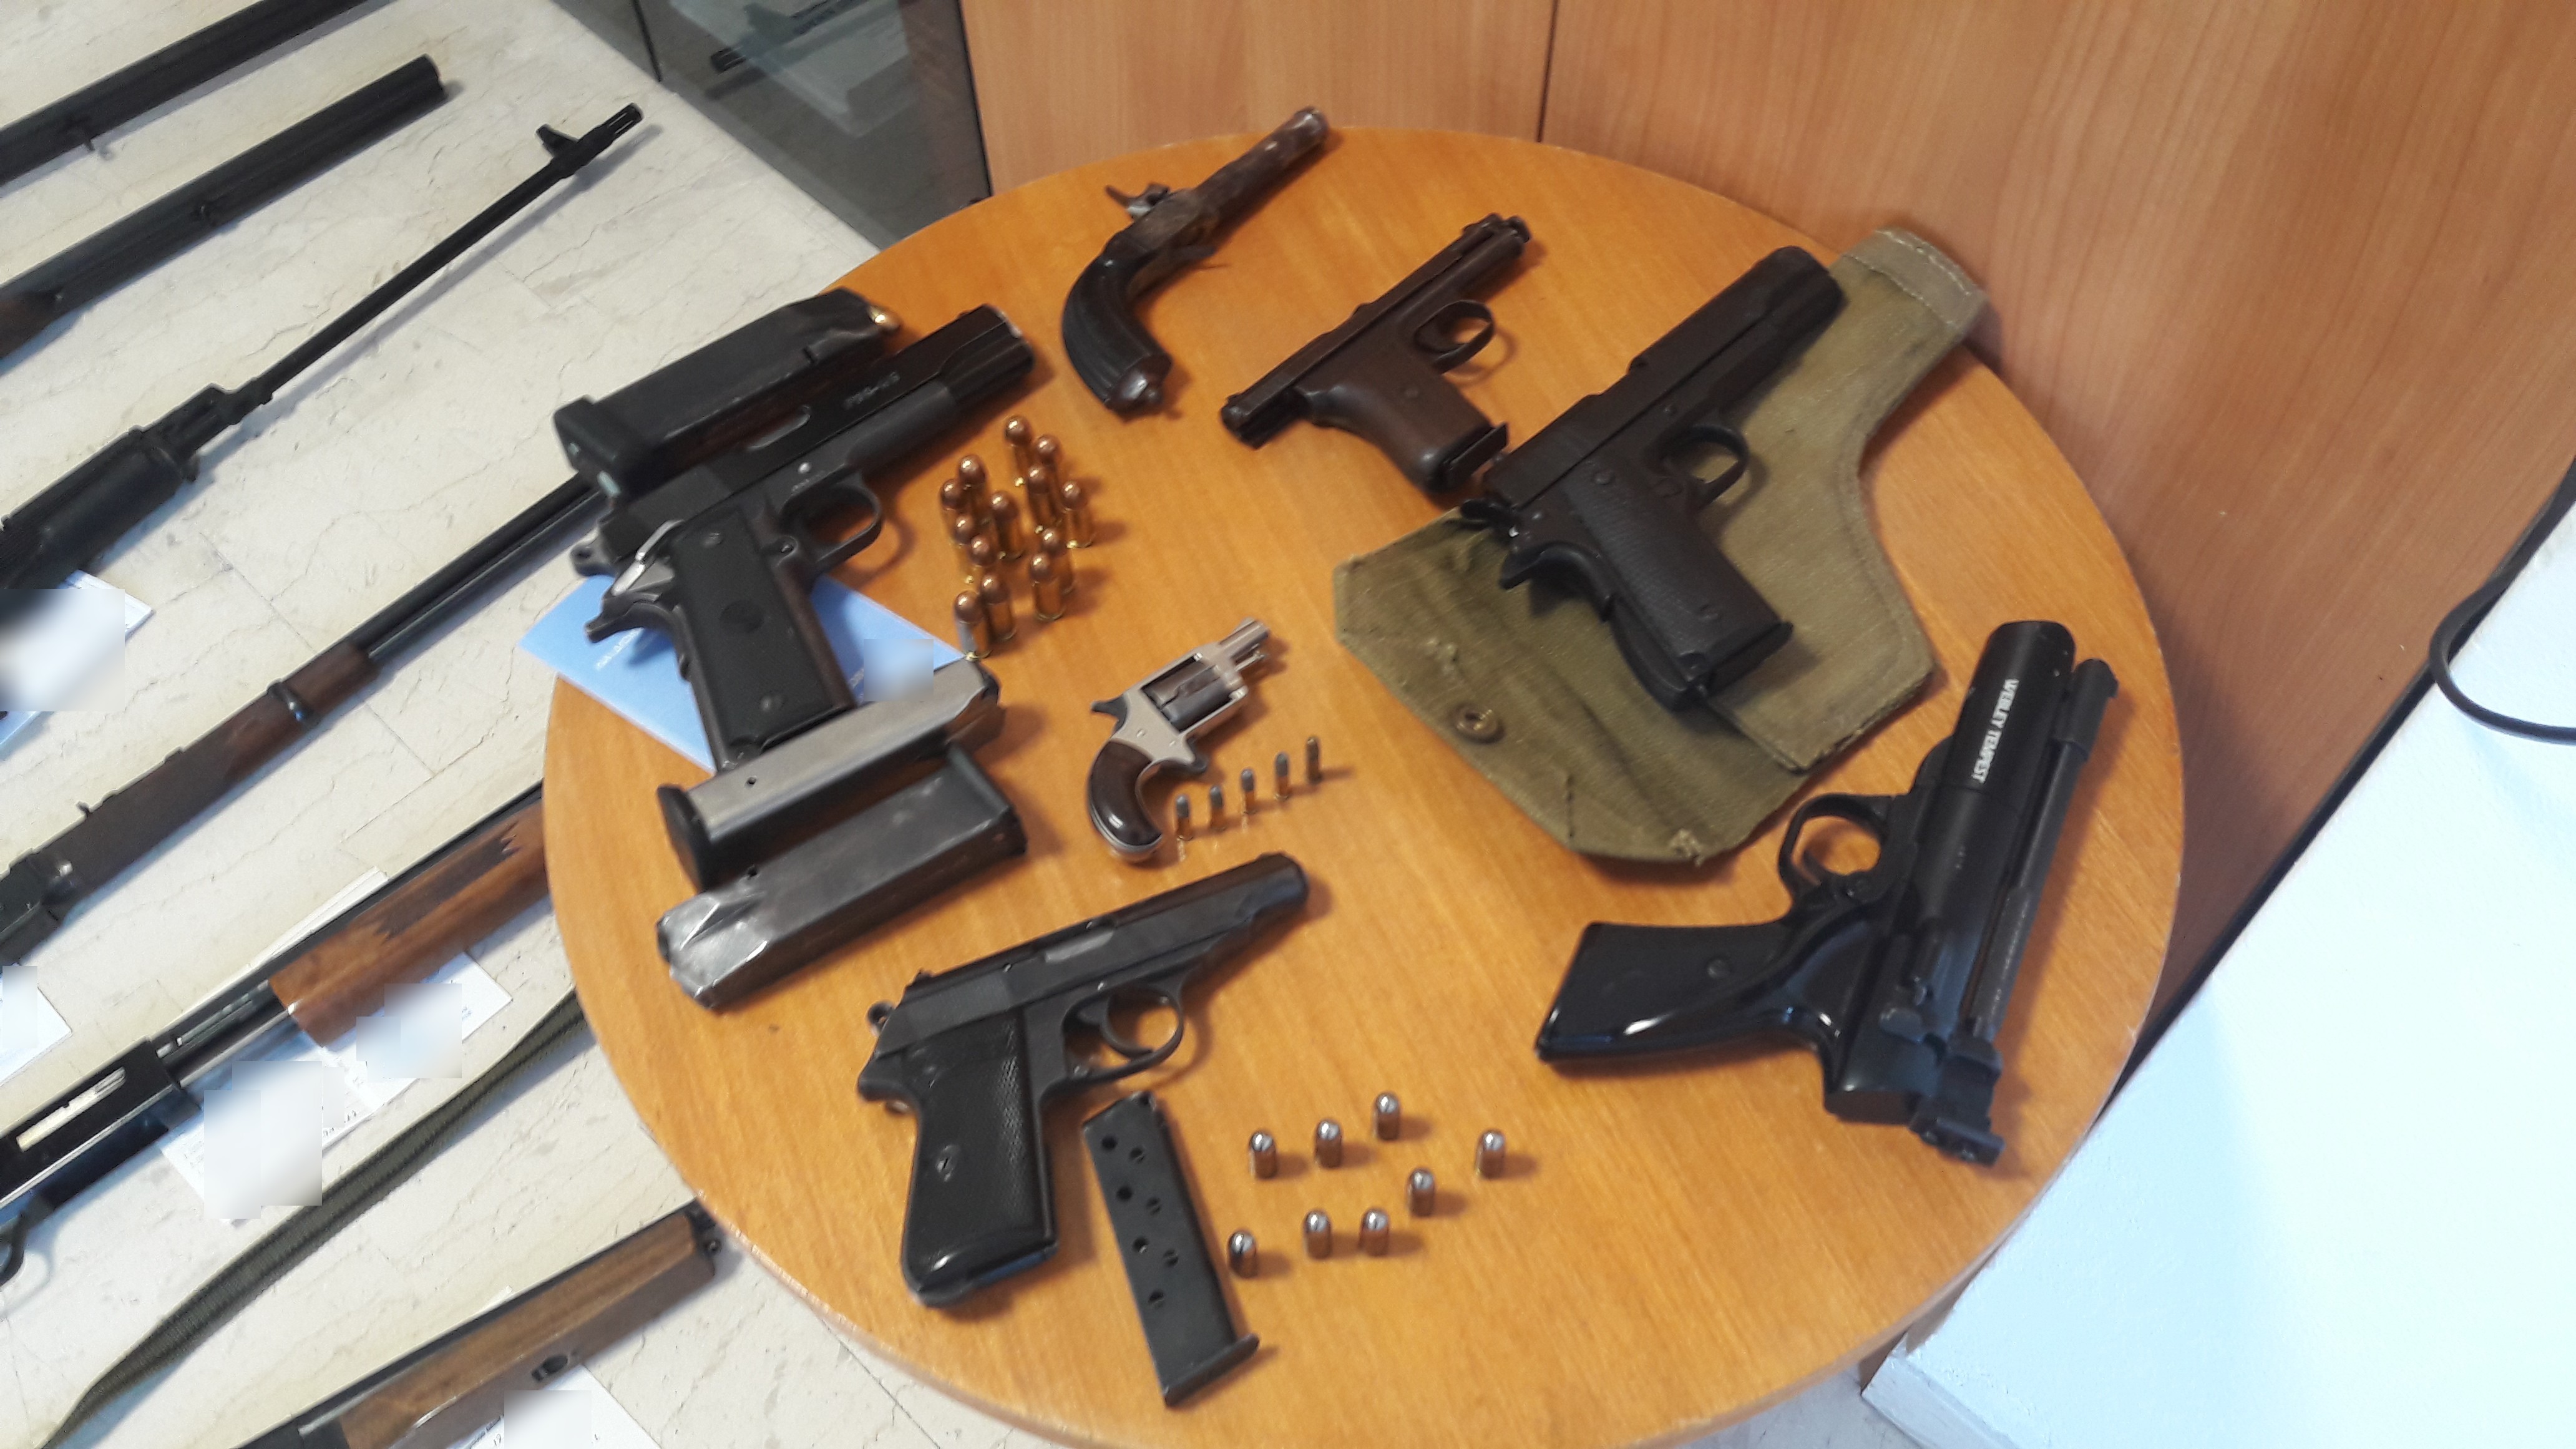 Ολόκληρο οπλοστάσιο βρέθηκε στο σπίτι 54χρονου στο Ηράκλειο (φωτο)